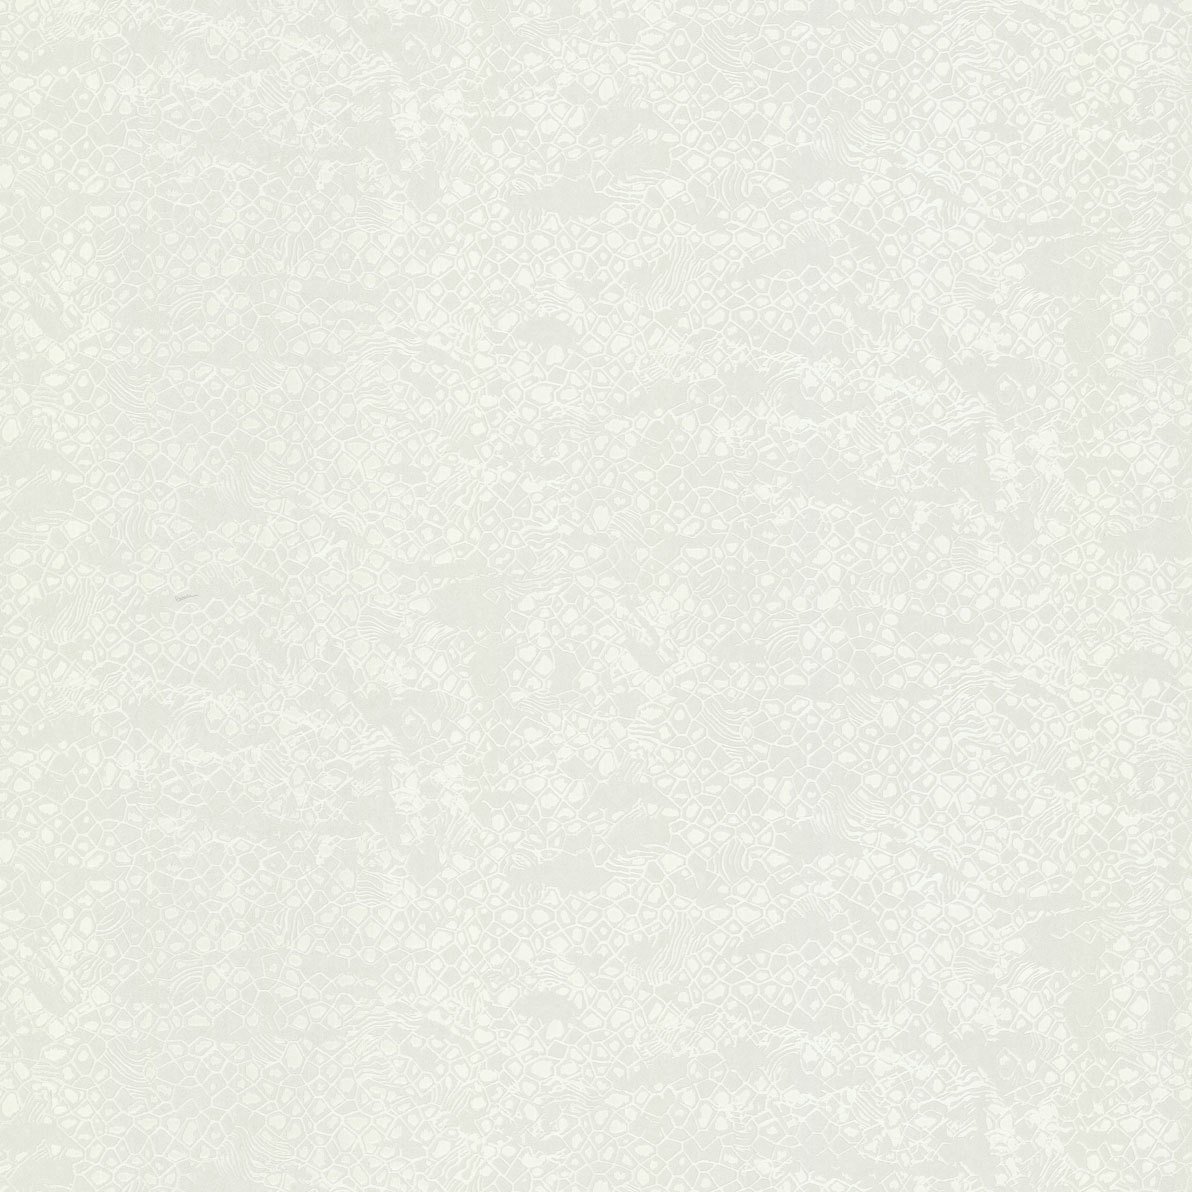 Roberto Cavalli 8 Nolu Koleksiyon Desenli Beyaz